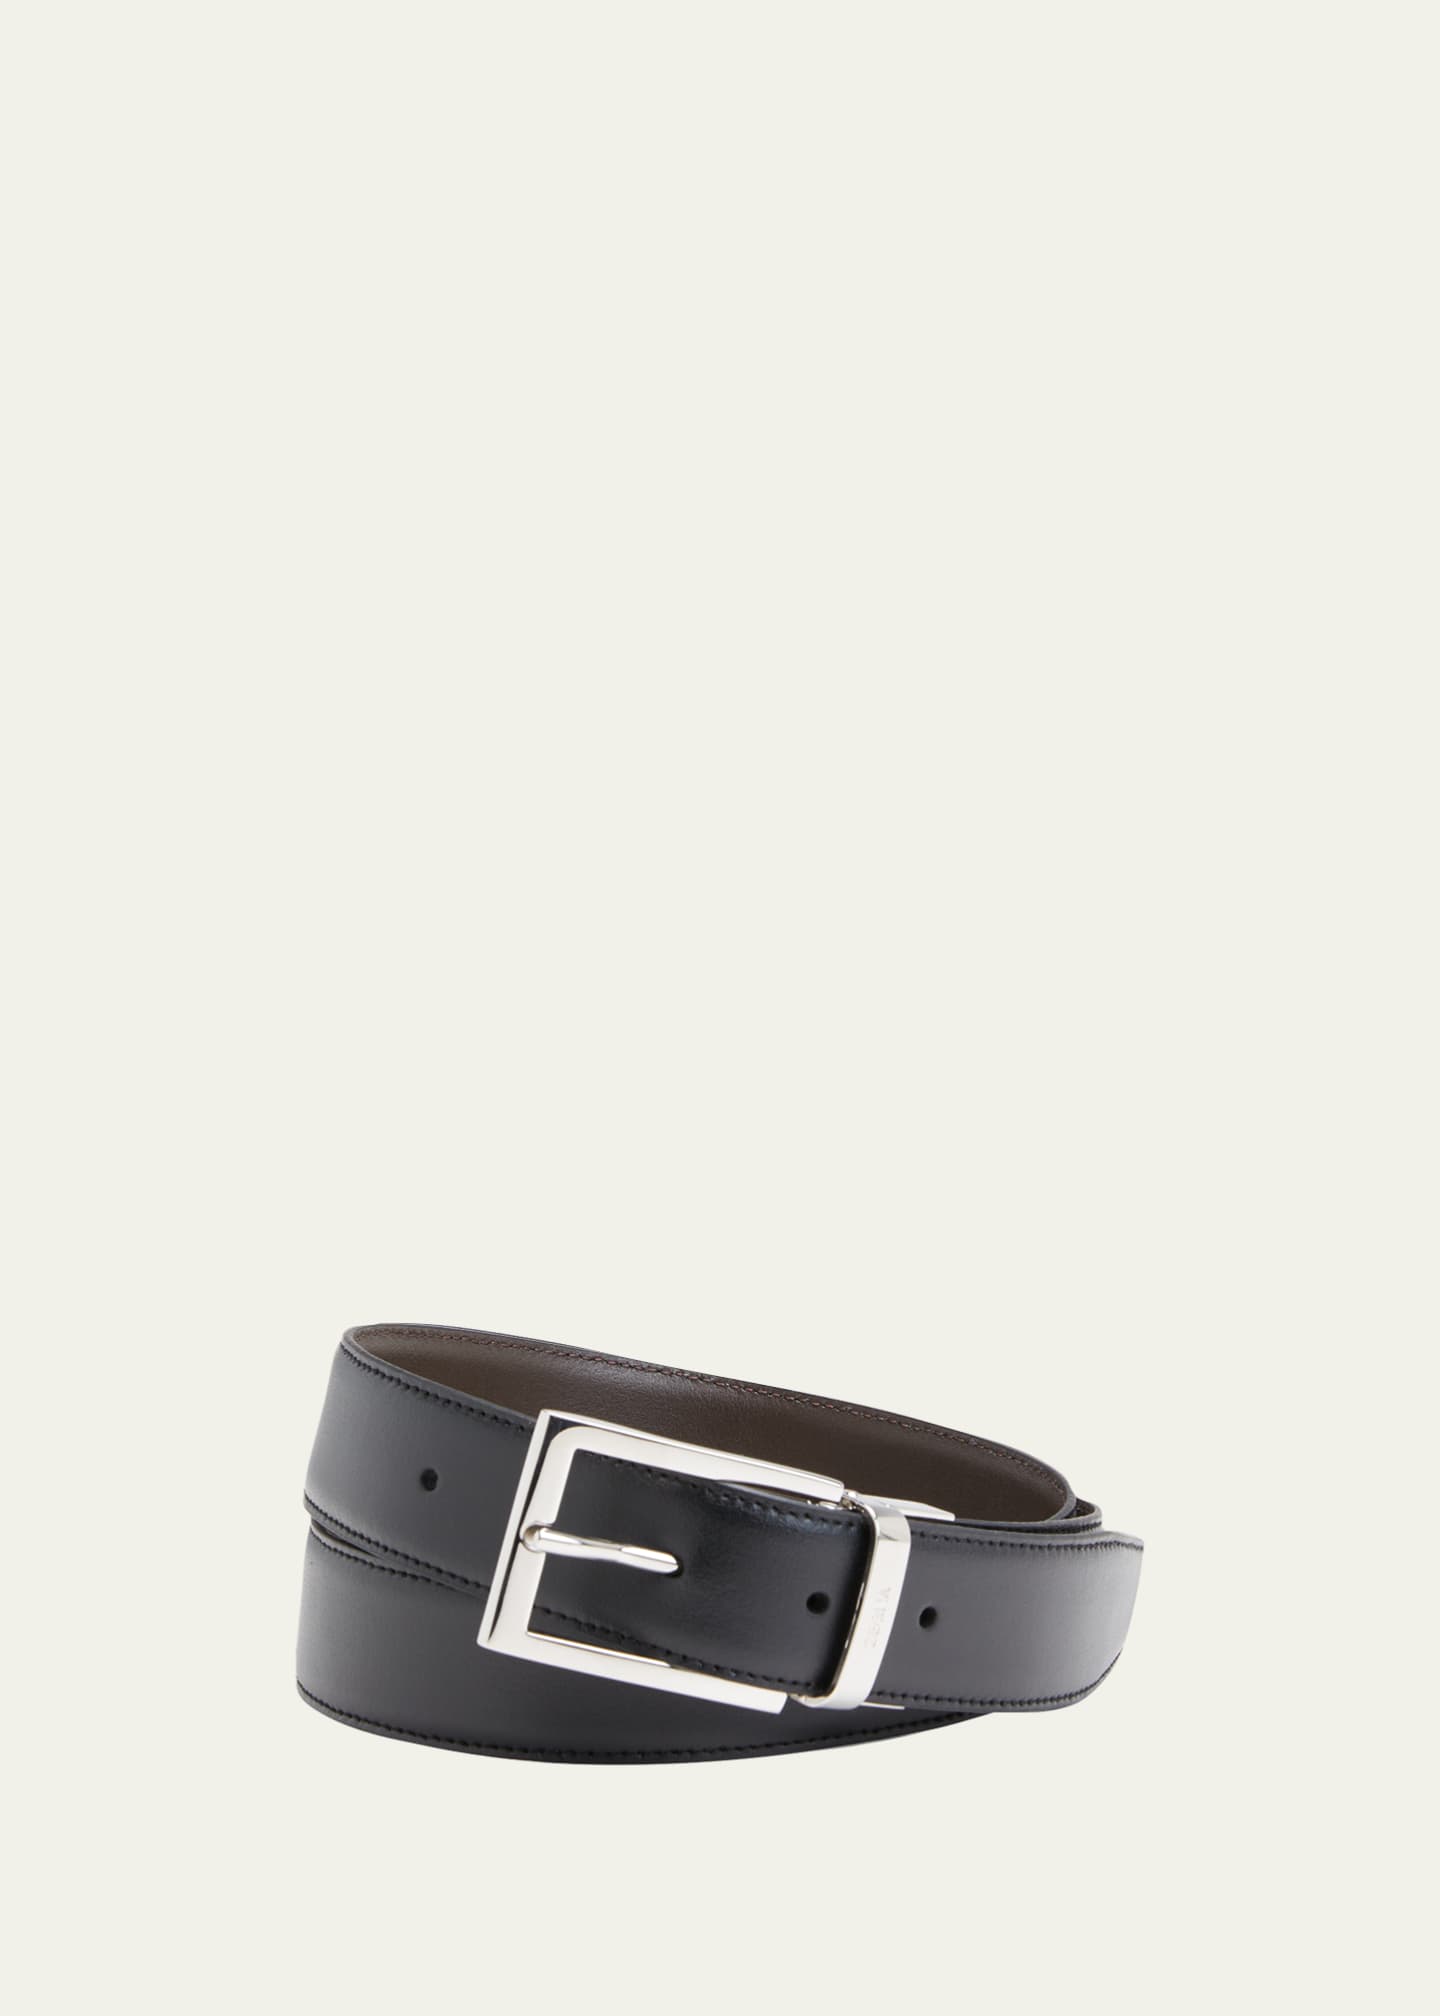 ZEGNA Men's Reversible Adjustable Leather Belt - Bergdorf Goodman